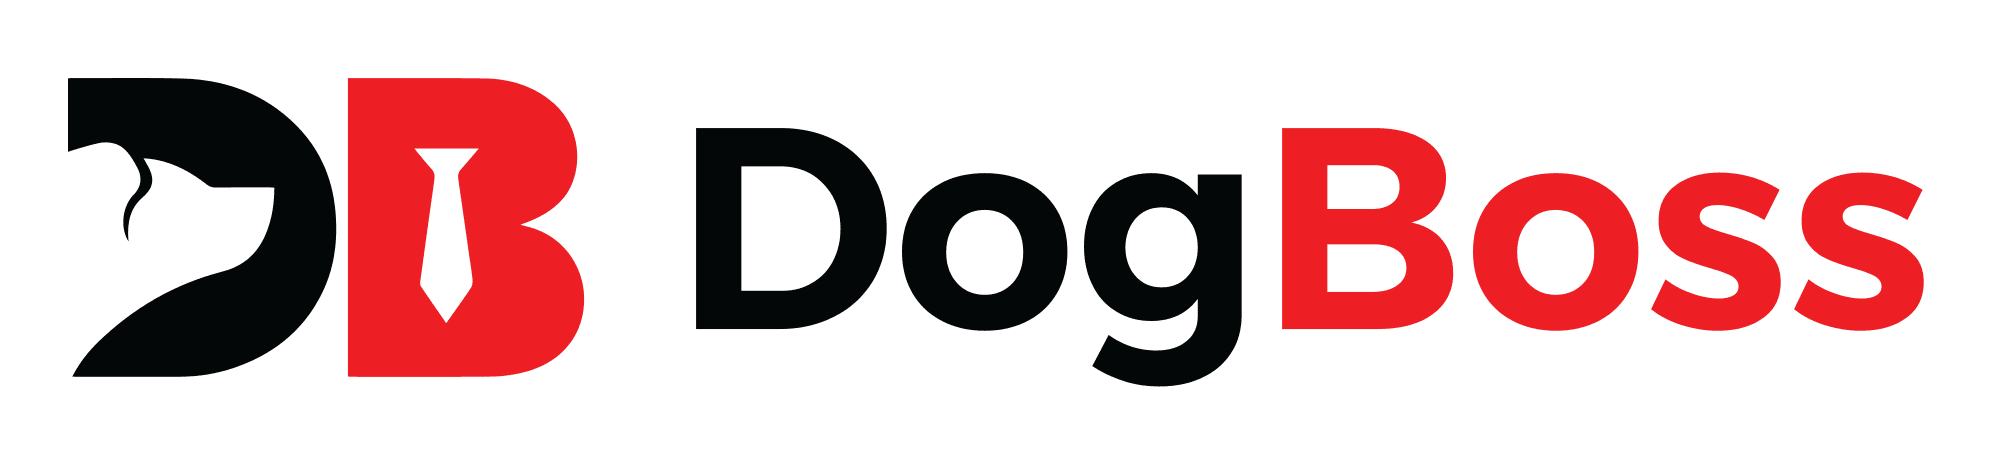 DogBoss702 banner